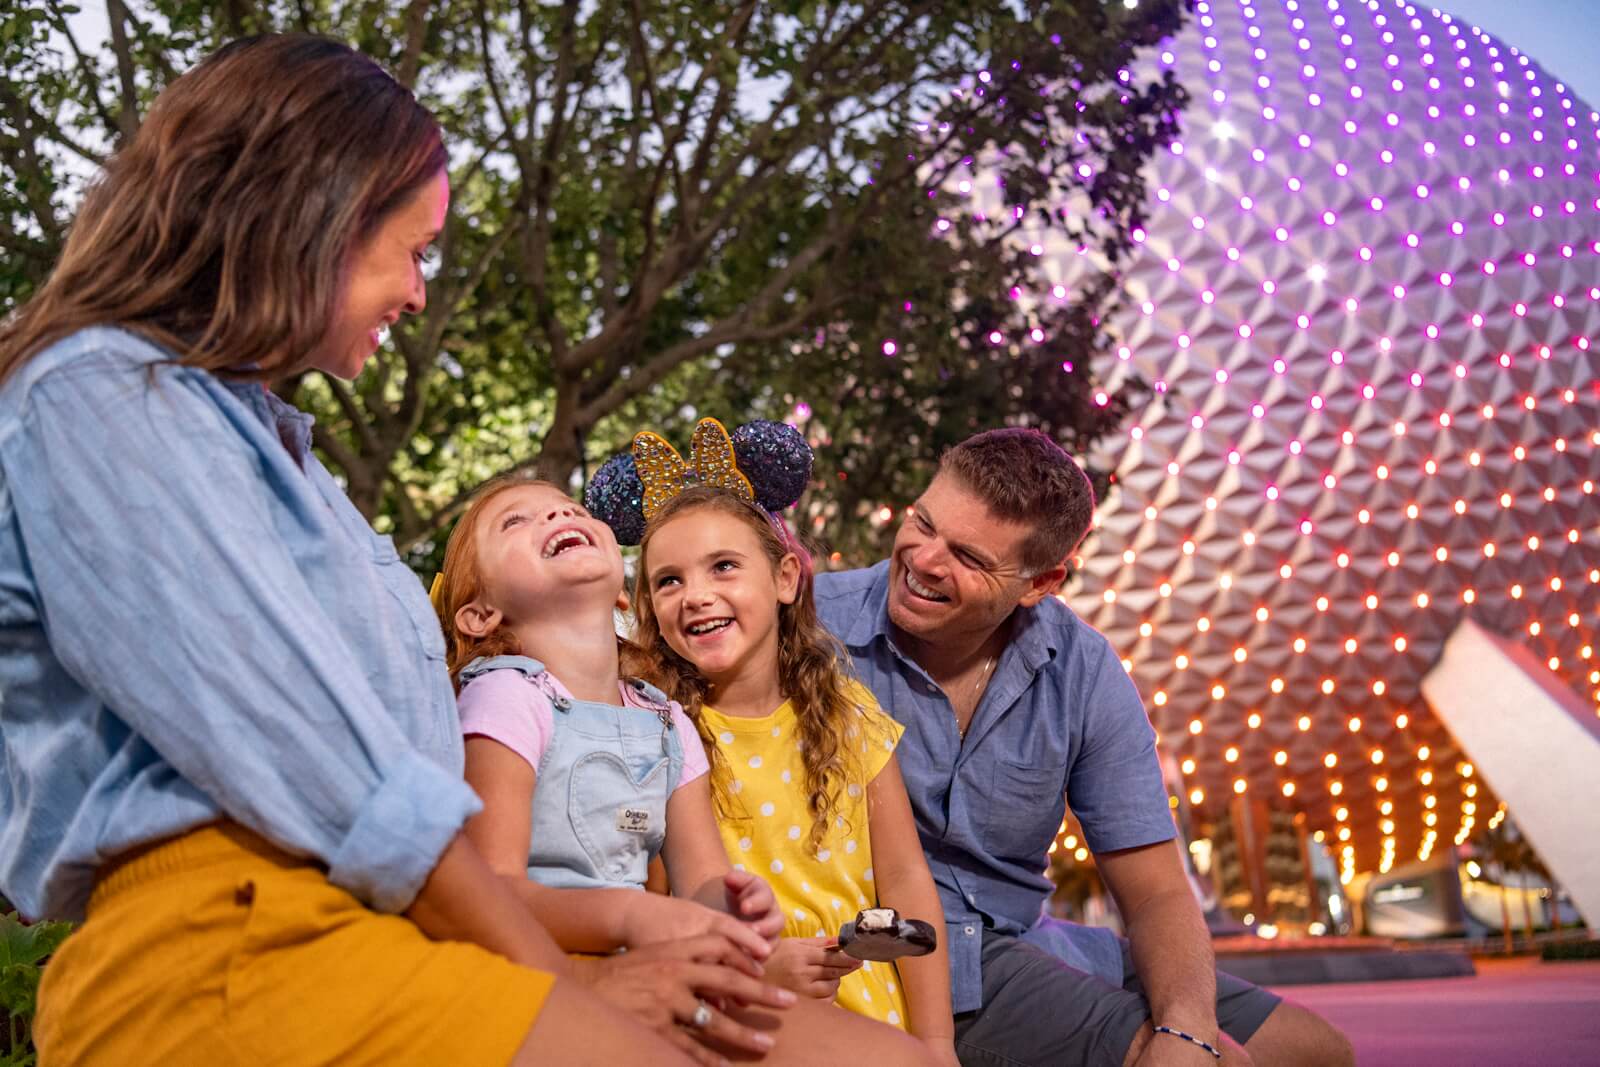 Découvrez nos incroyables forfaits Disney 2024 au Walt Disney World. Profitez d'une expérience magique en famille avec accès aux parcs à thème, attractions, spectacles et avantages exclusifs. Réservez dès maintenant et créez des souvenirs inoubliables au cœur de la magie Disney